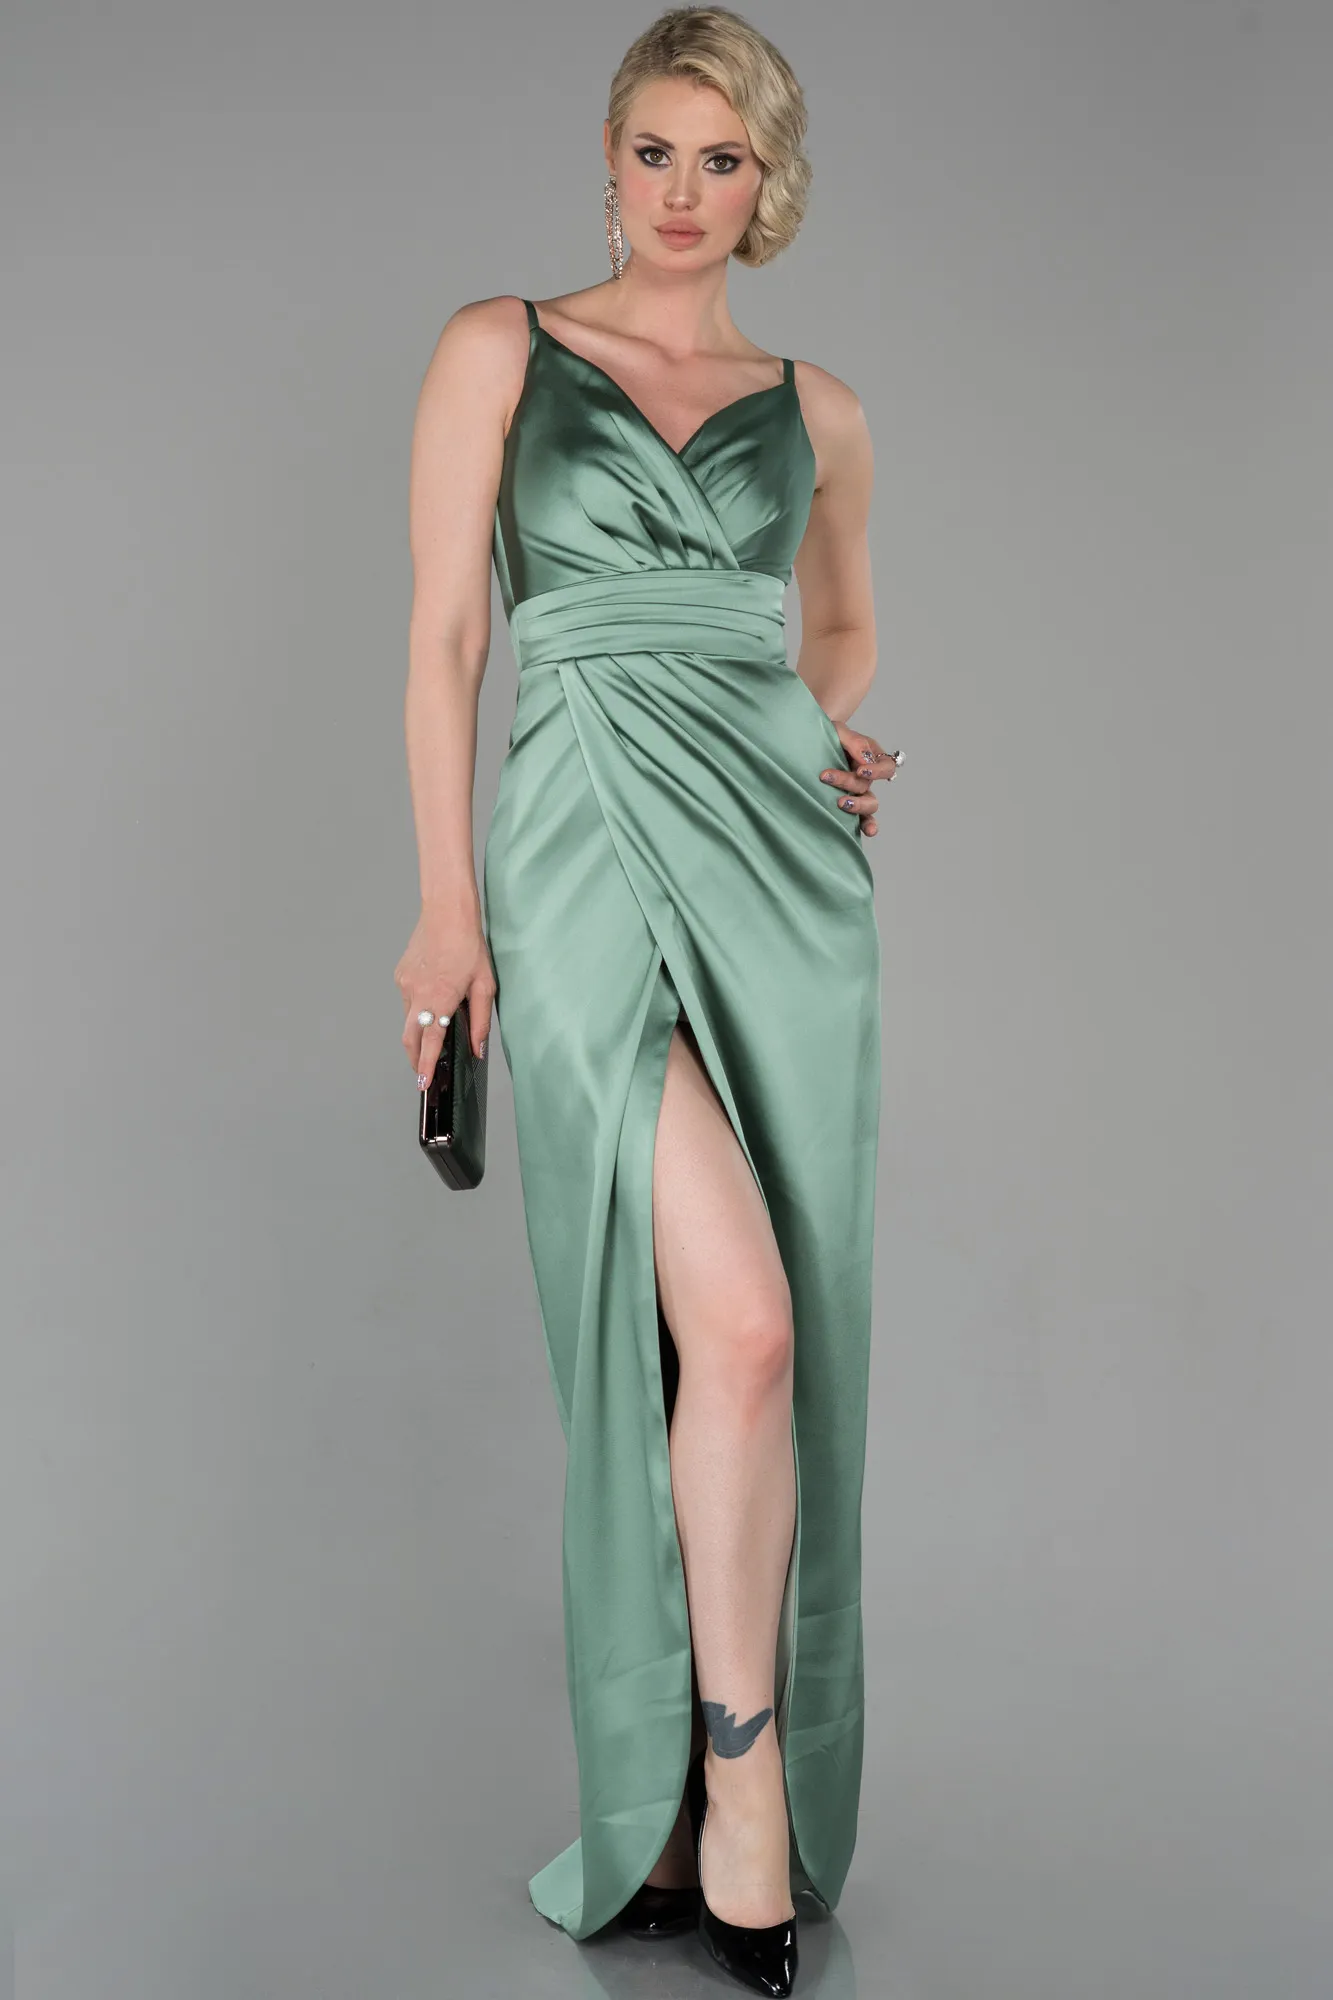 Turquoise-Long Engagement Dress ABU564